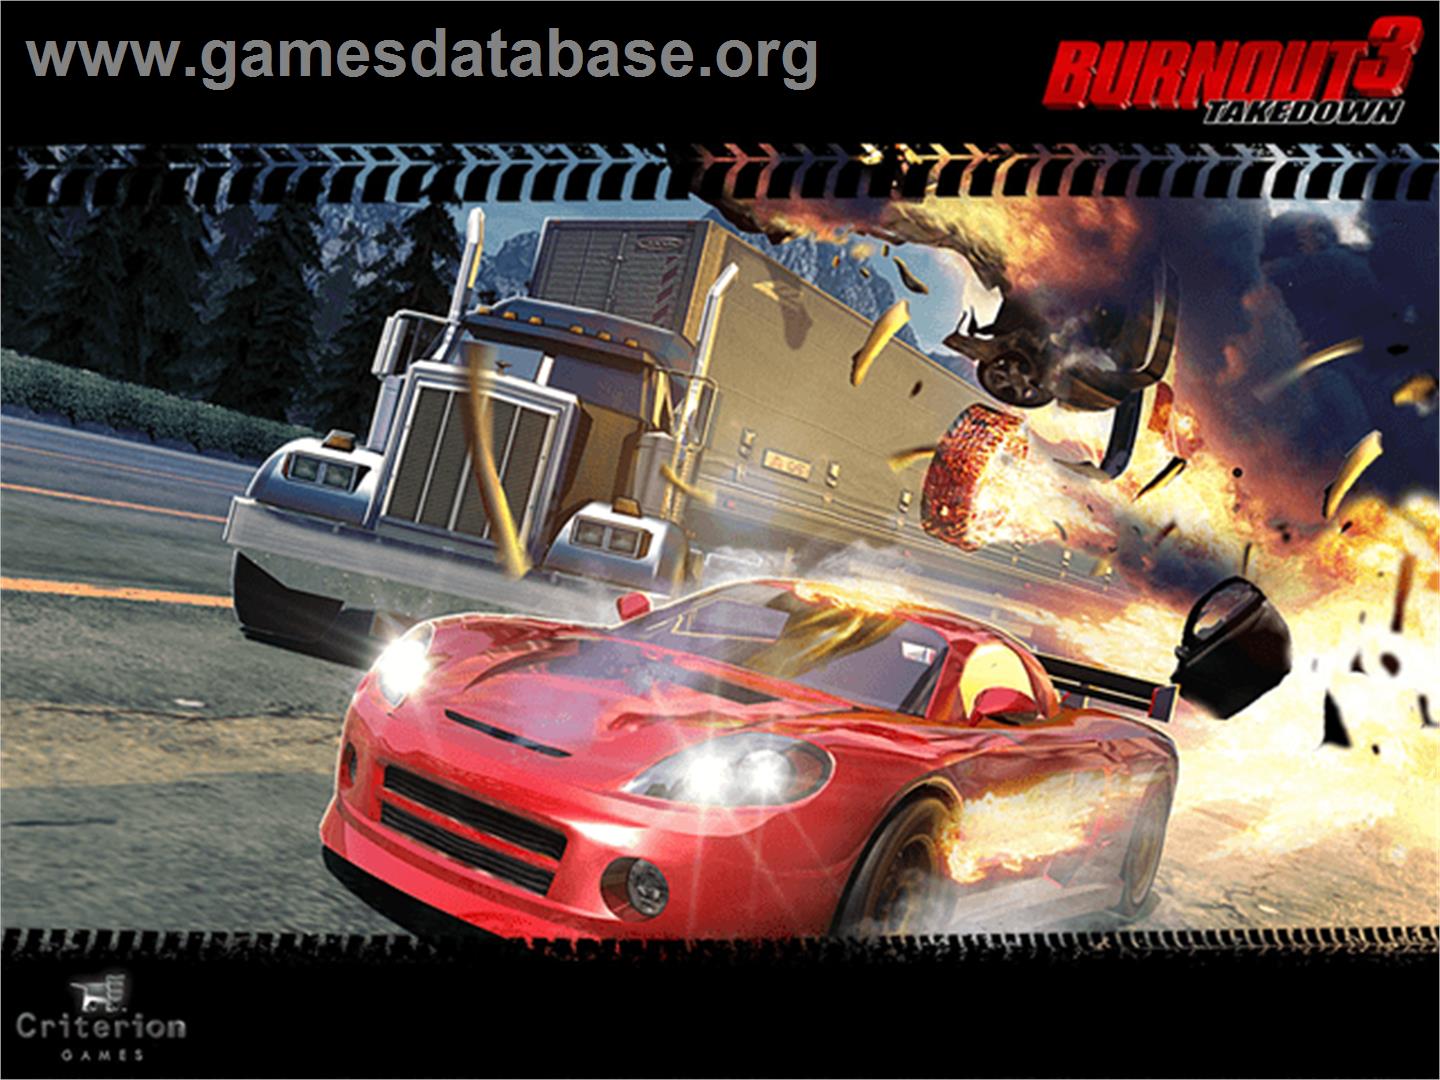 Burnout 3: Takedown - Microsoft Xbox - Artwork - Title Screen